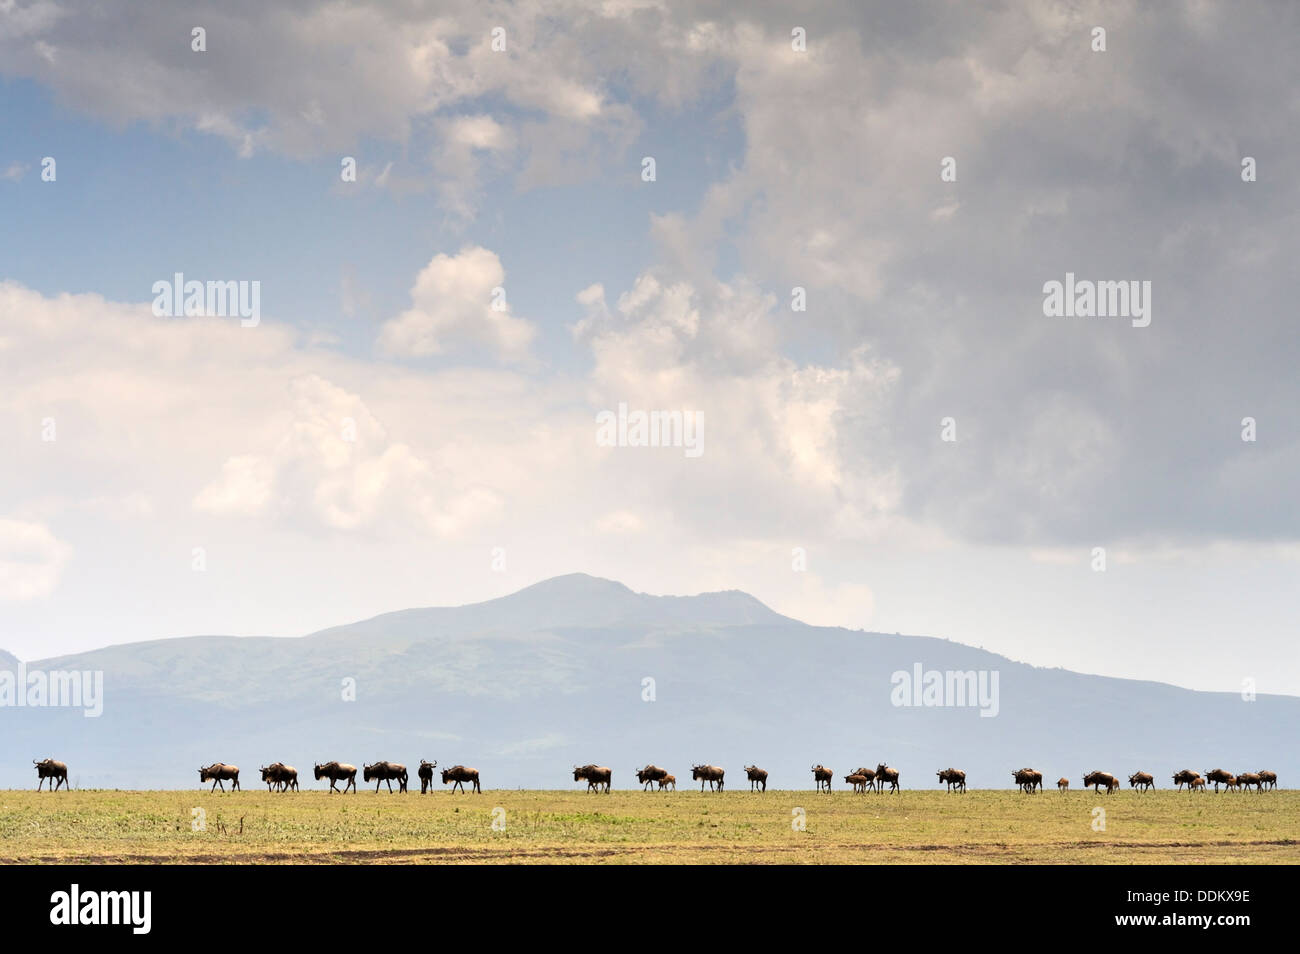 Línea de ñus, Gnu (Connochaetes taurinus), pasando por delante del cráter del Ngorongoro mountain vista desde el Serengeti, Tanzania Foto de stock